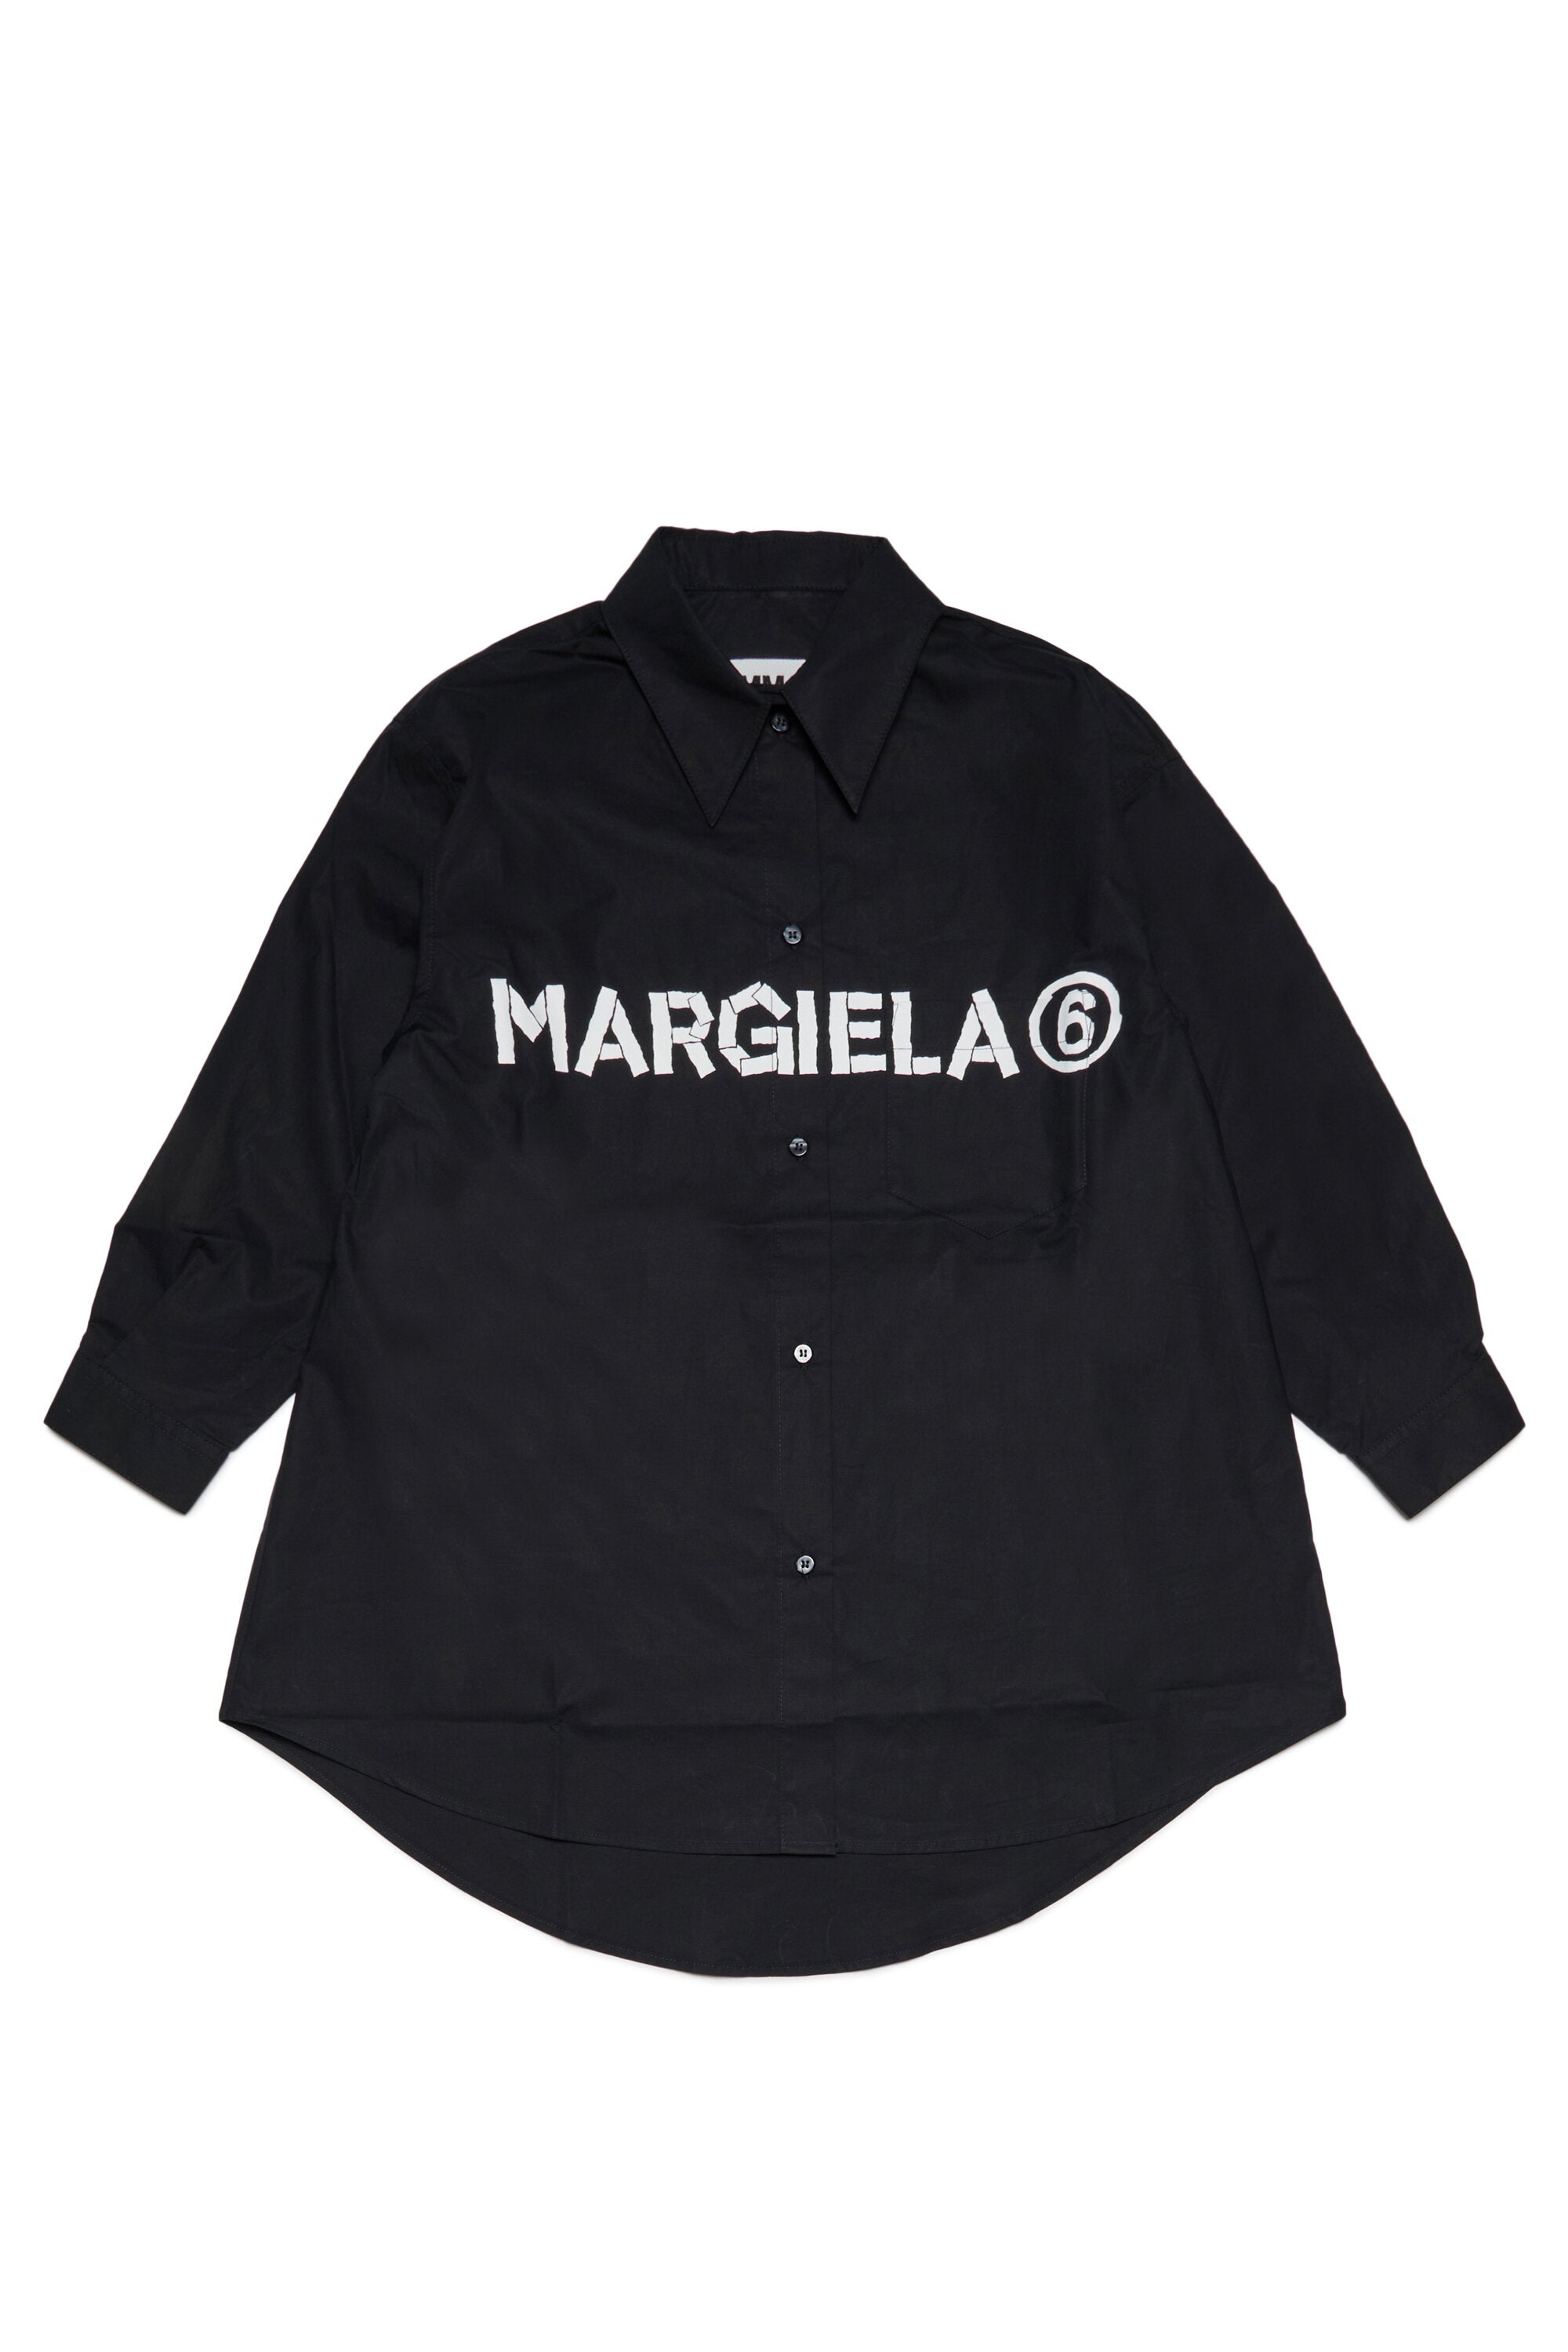 MM6 MAISON MARGIELA ポプリン シャツドレス